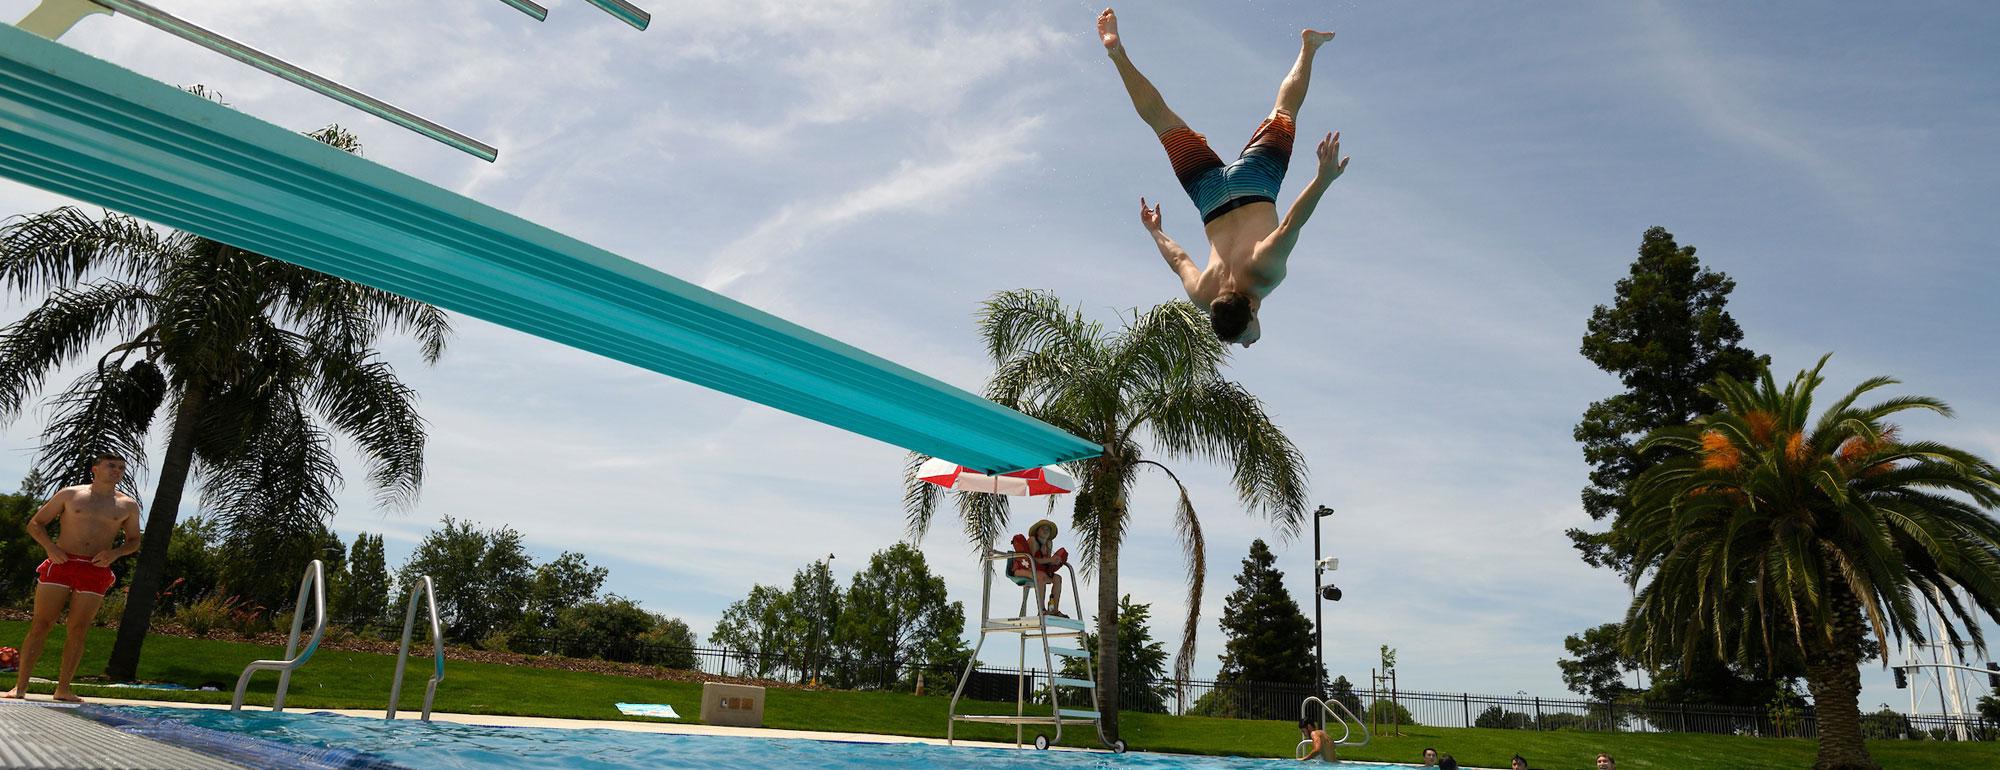 一名学生在加州大学戴维斯娱乐池的跳水板上做杂技跳跃